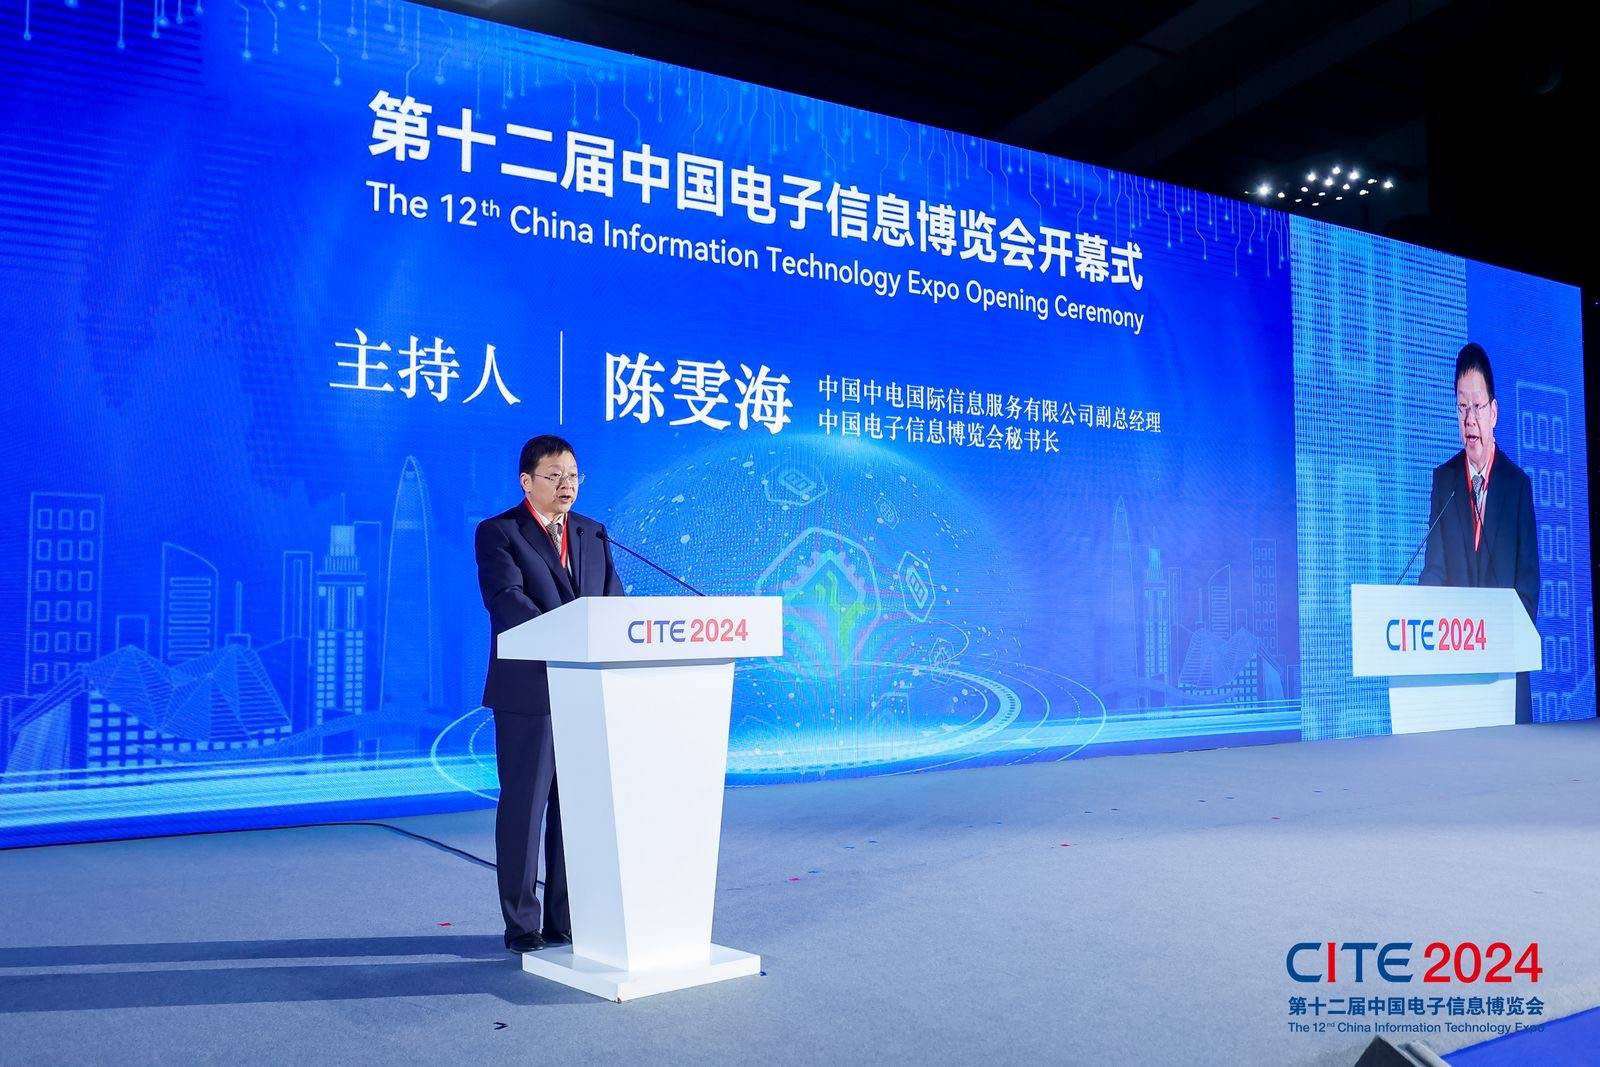 2025深圳电子展,中国（深圳）国际电子信息展览会